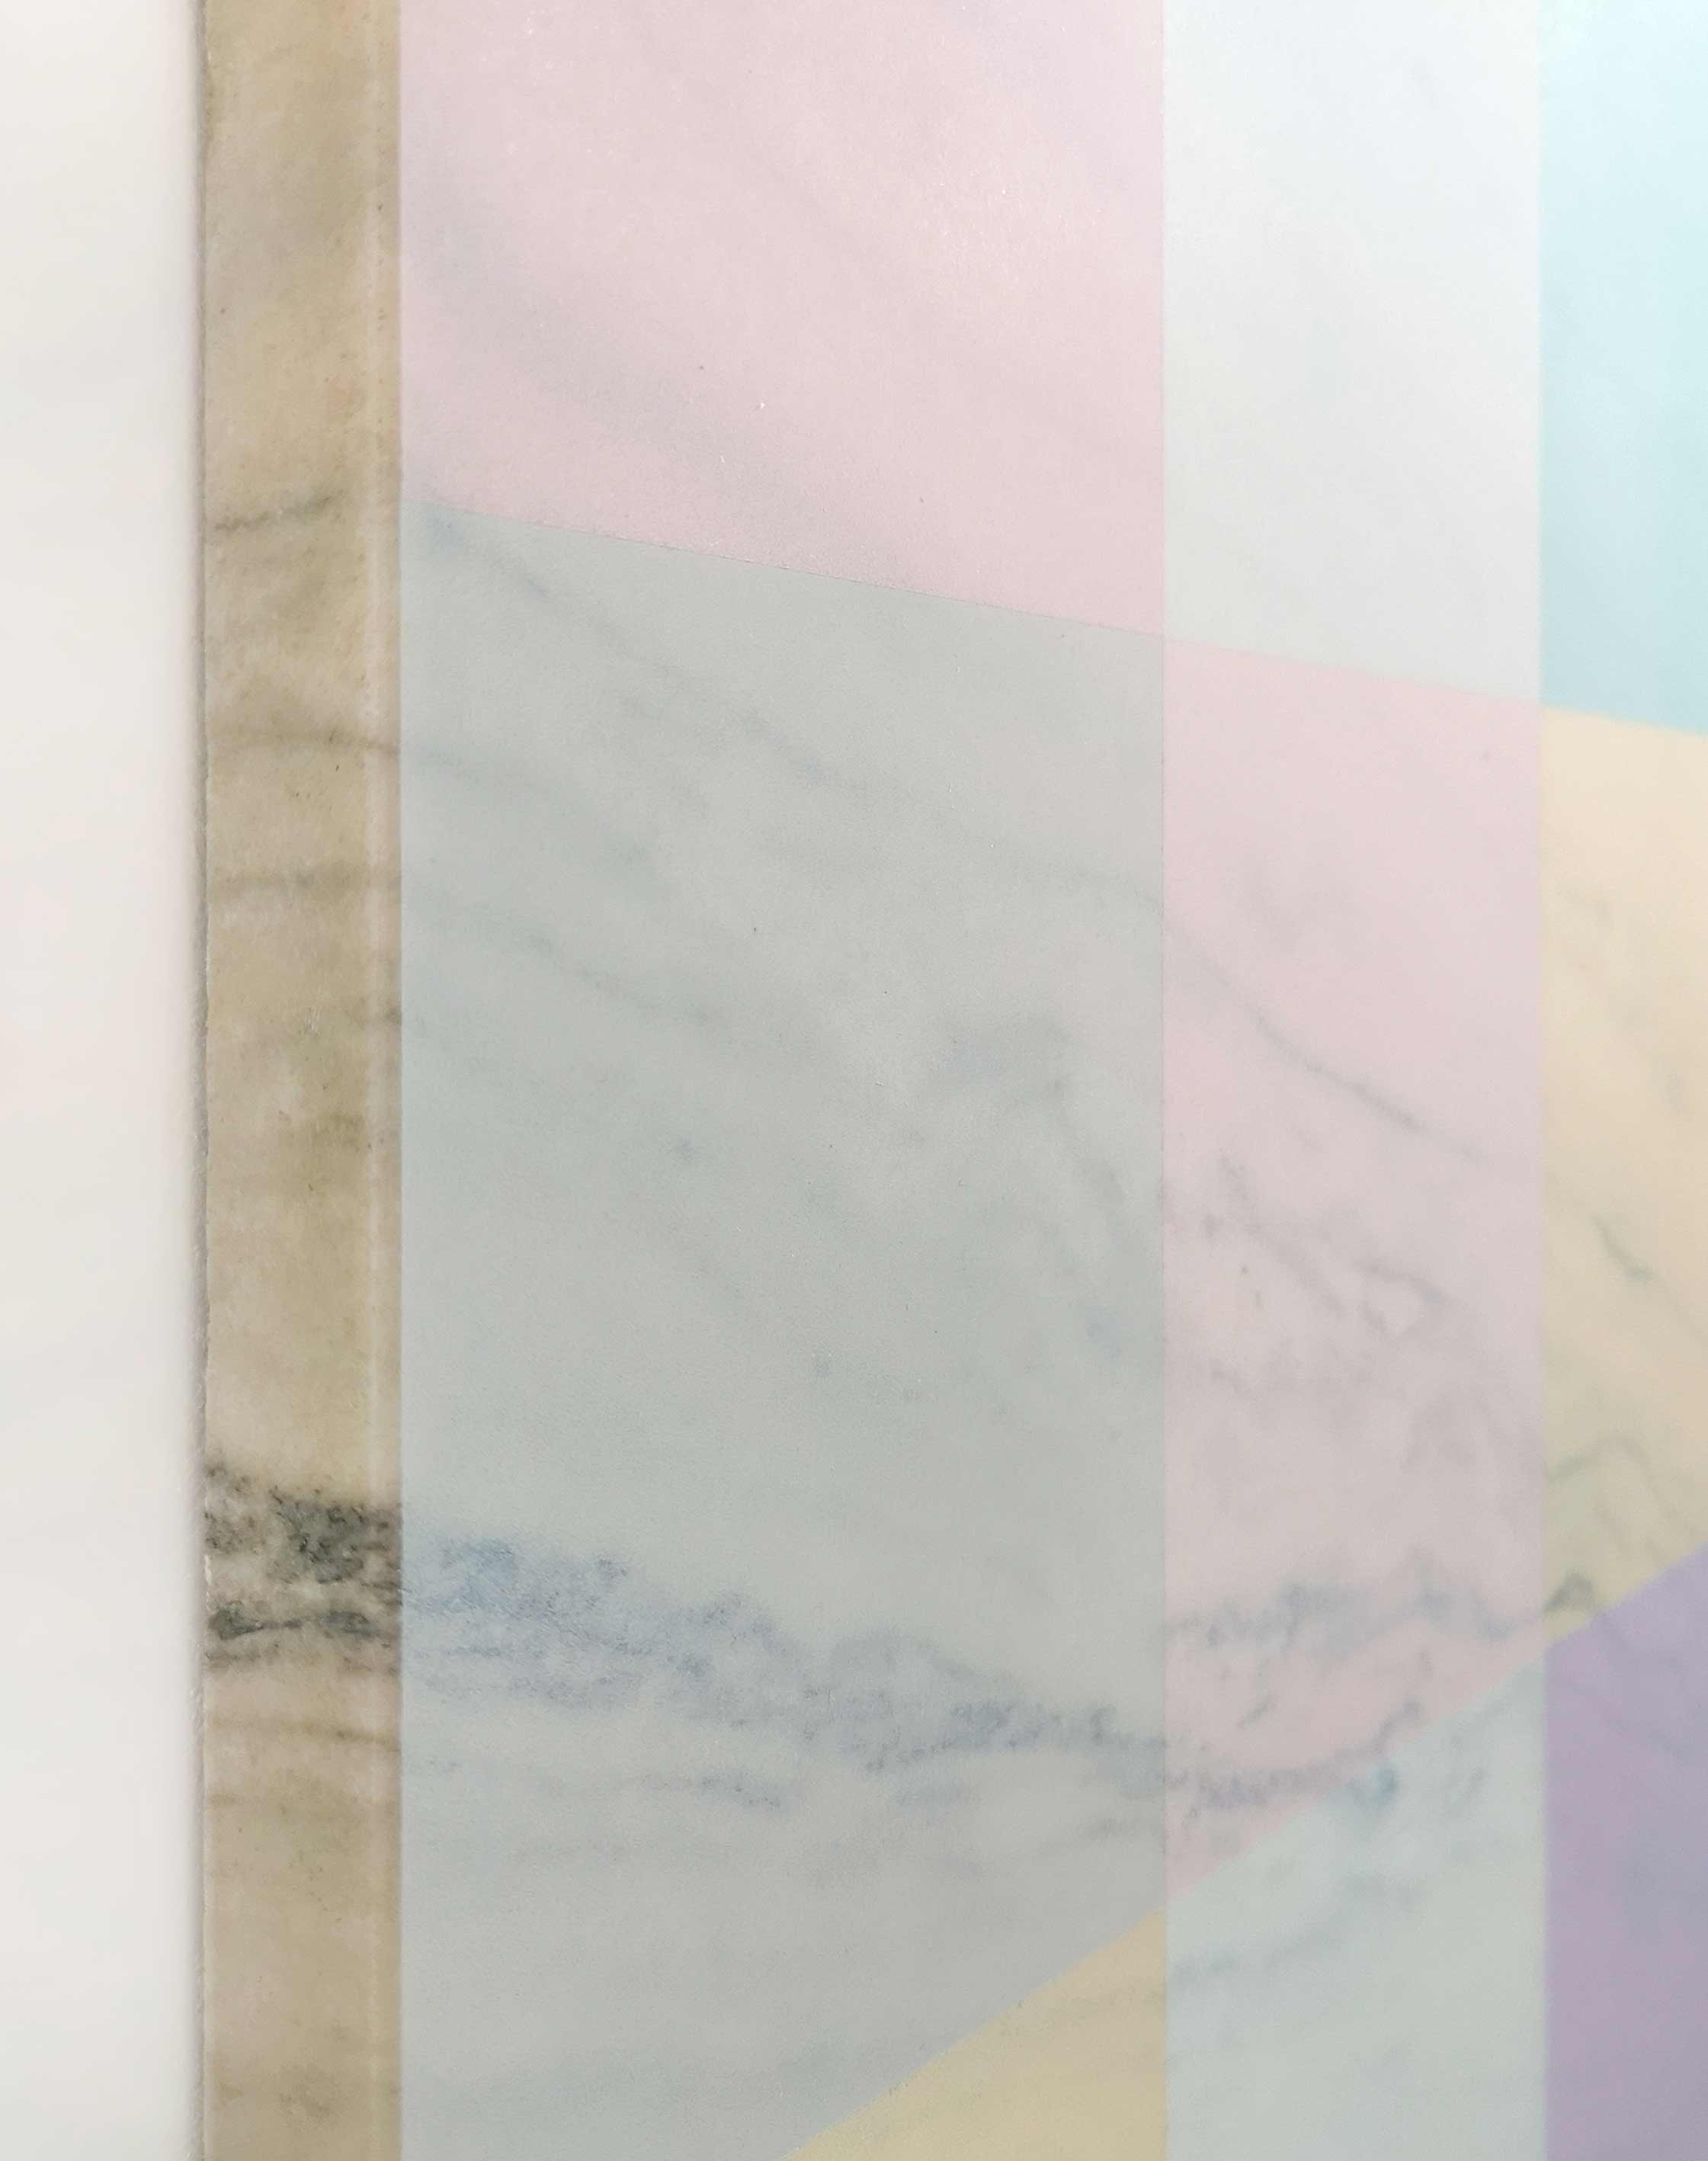 Erdélyi Gábor: Kilátás a márványra, 2022, akril, márvány, 60x45x2,3 cm, részlet, (forrás: FMC)